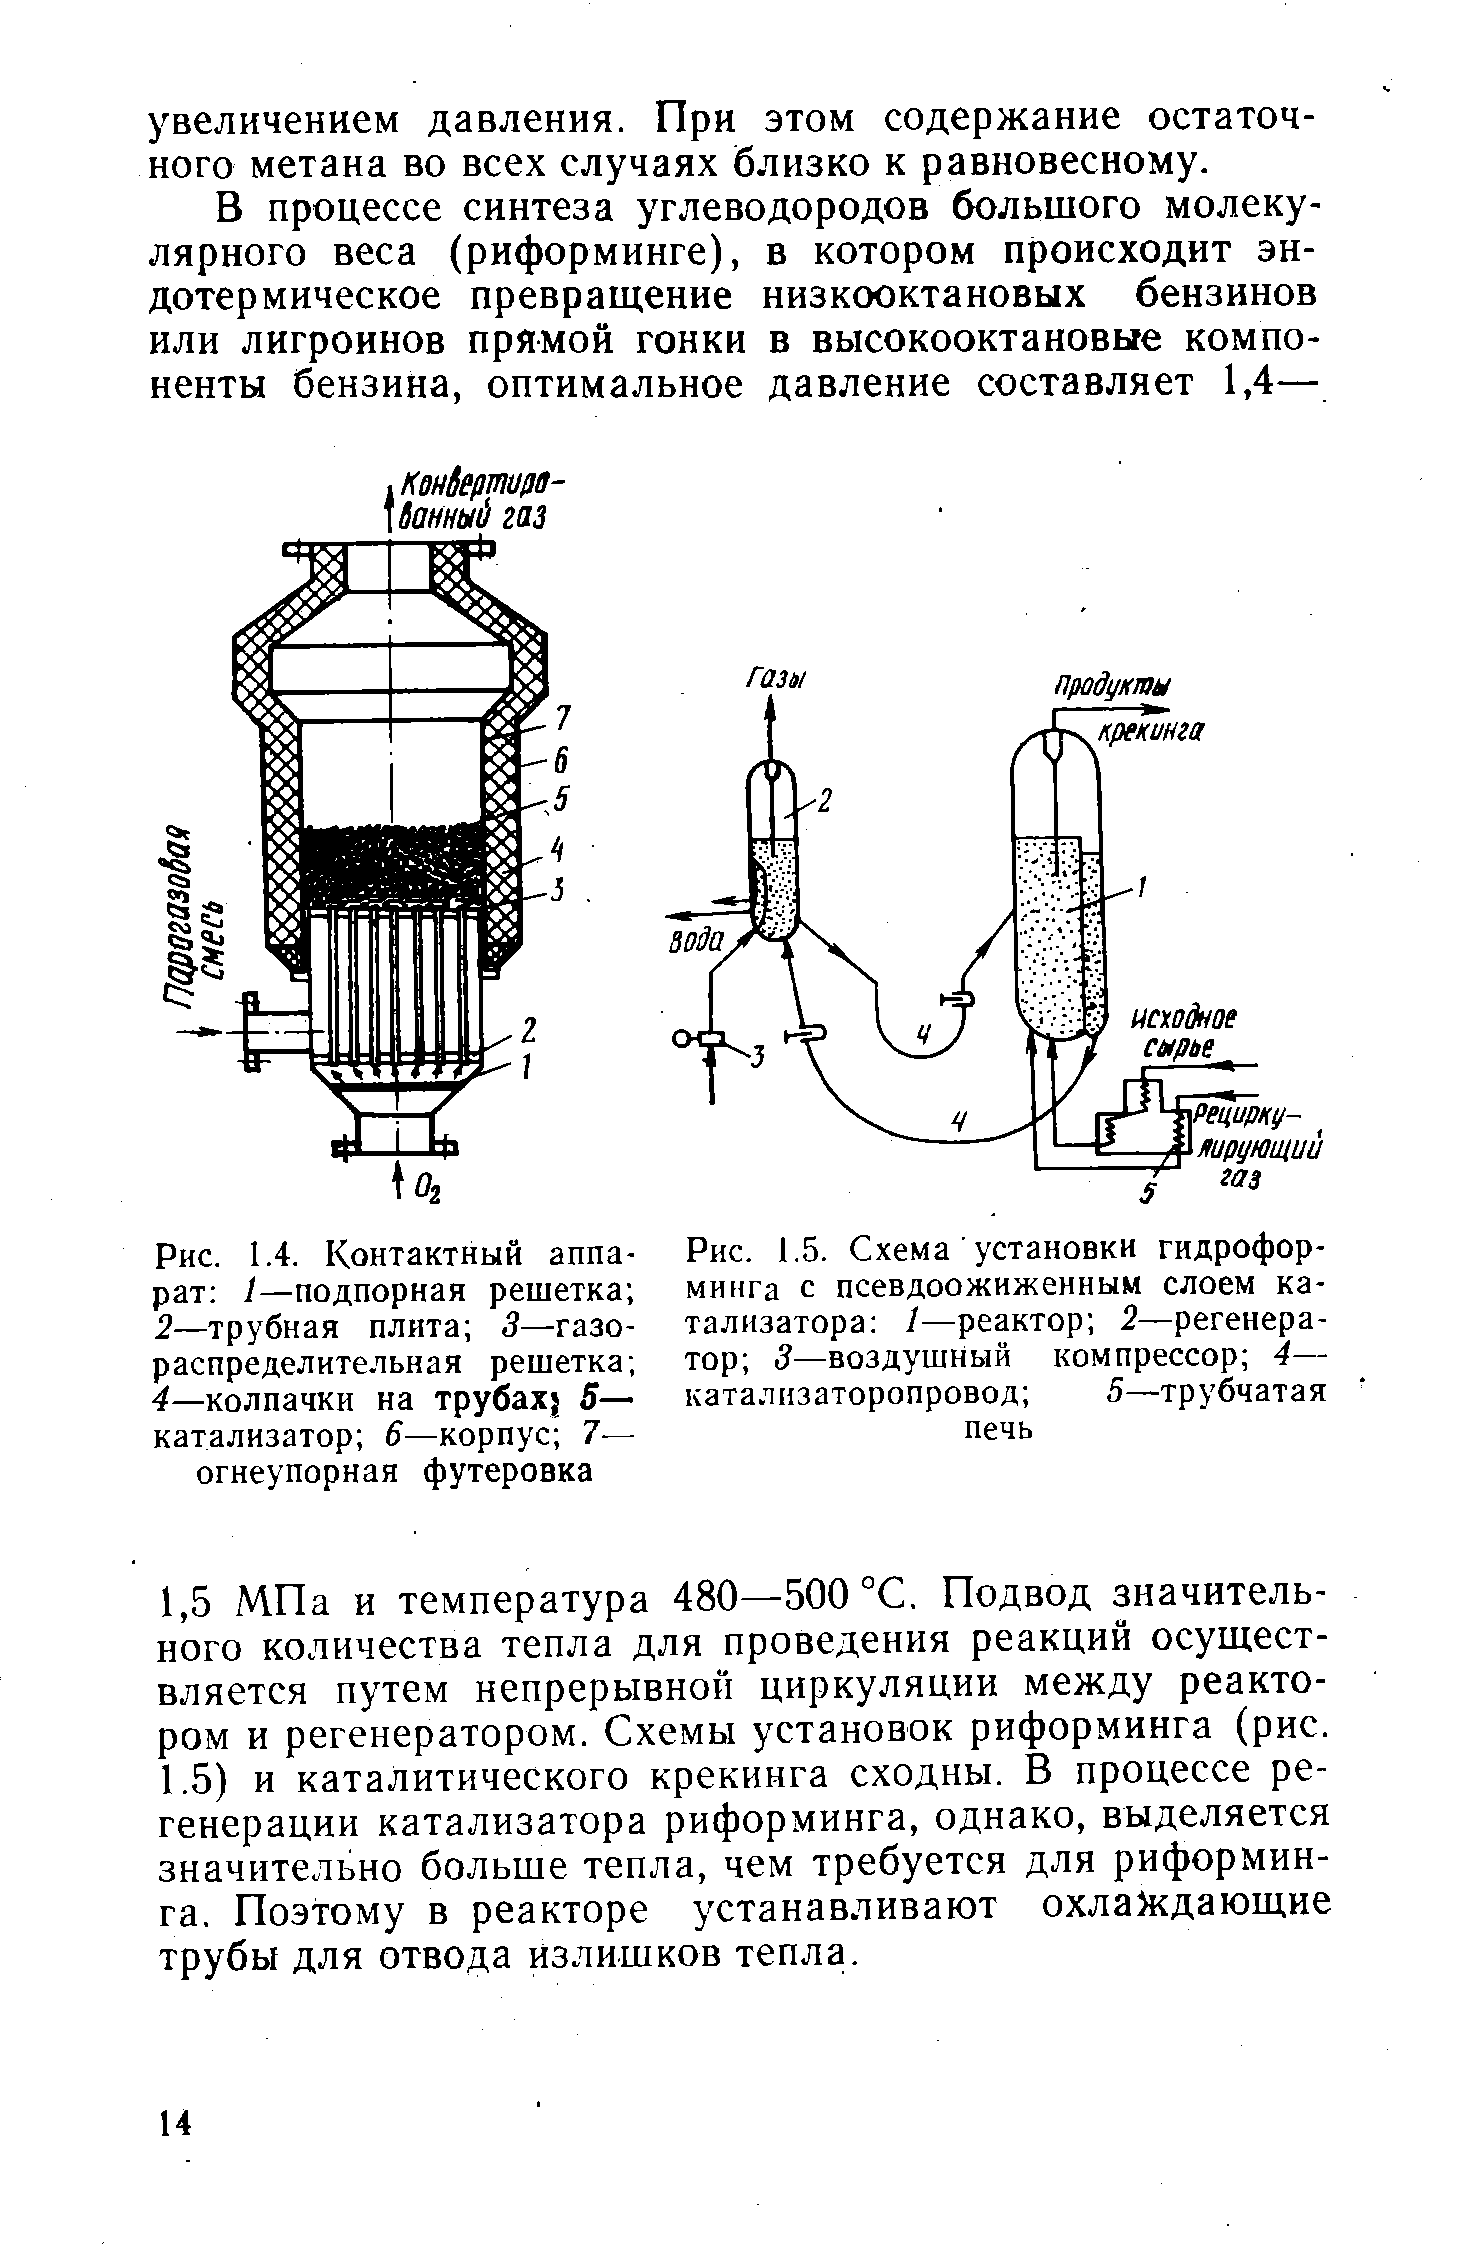 Рис. 1.5. Схема установки гидроформинга с <a href="/info/5512">псевдоожиженным слоем</a> катализатора /—реактор 2—регенератор 3—<a href="/info/106887">воздушный компрессор</a> 4— каталнзаторопровод 5—трубчатая печь
